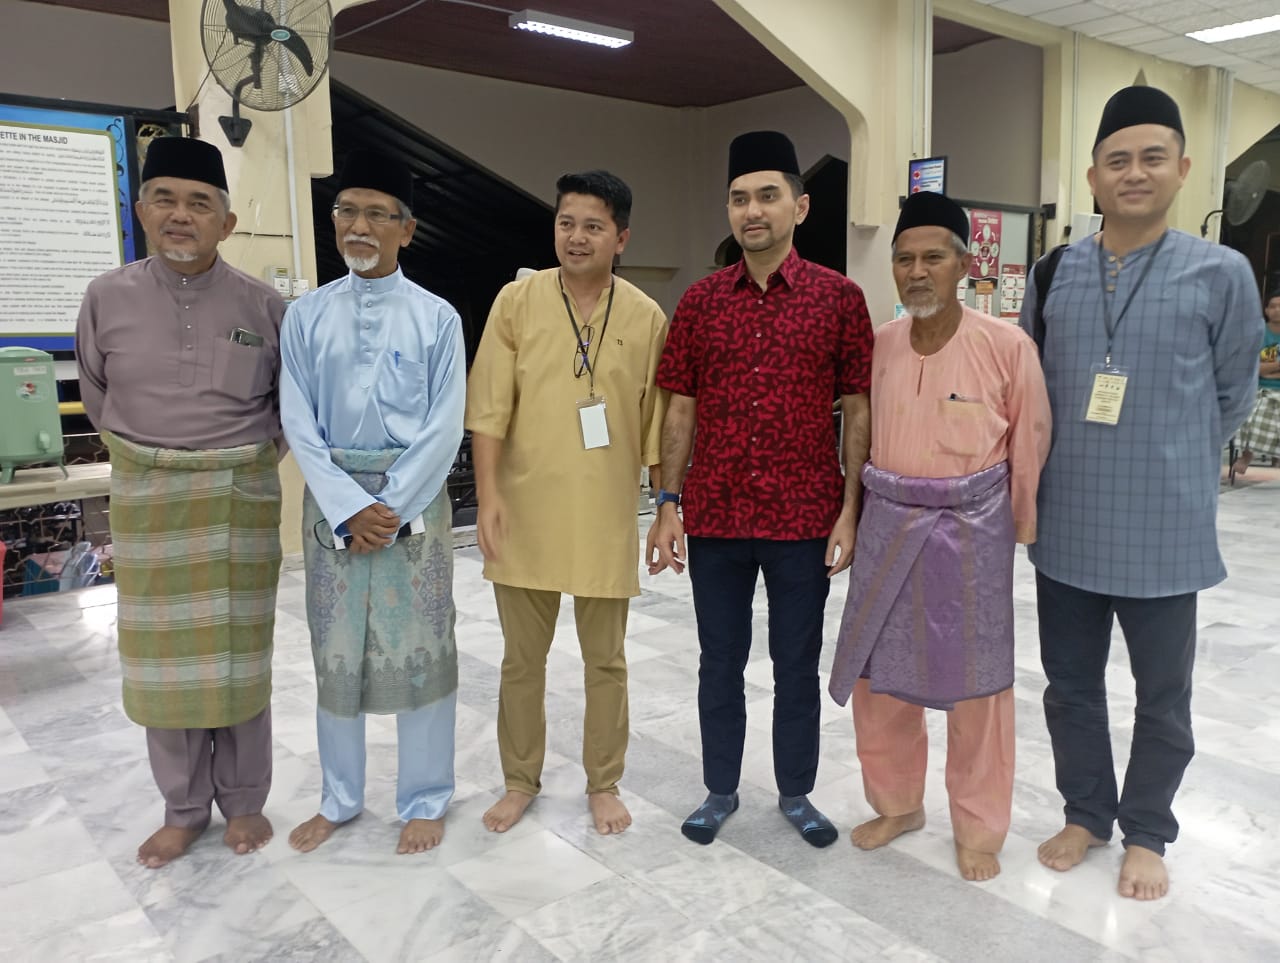 Menteri Pelancongan Seni dan Budaya, Khairul Firdaus Akhbar Khan foto bersama dengan Sahariman, GM Karangkraf Malaysia Hasyim Anang serta pengurus masjid Muadz bin Jabal Setiawangsa.